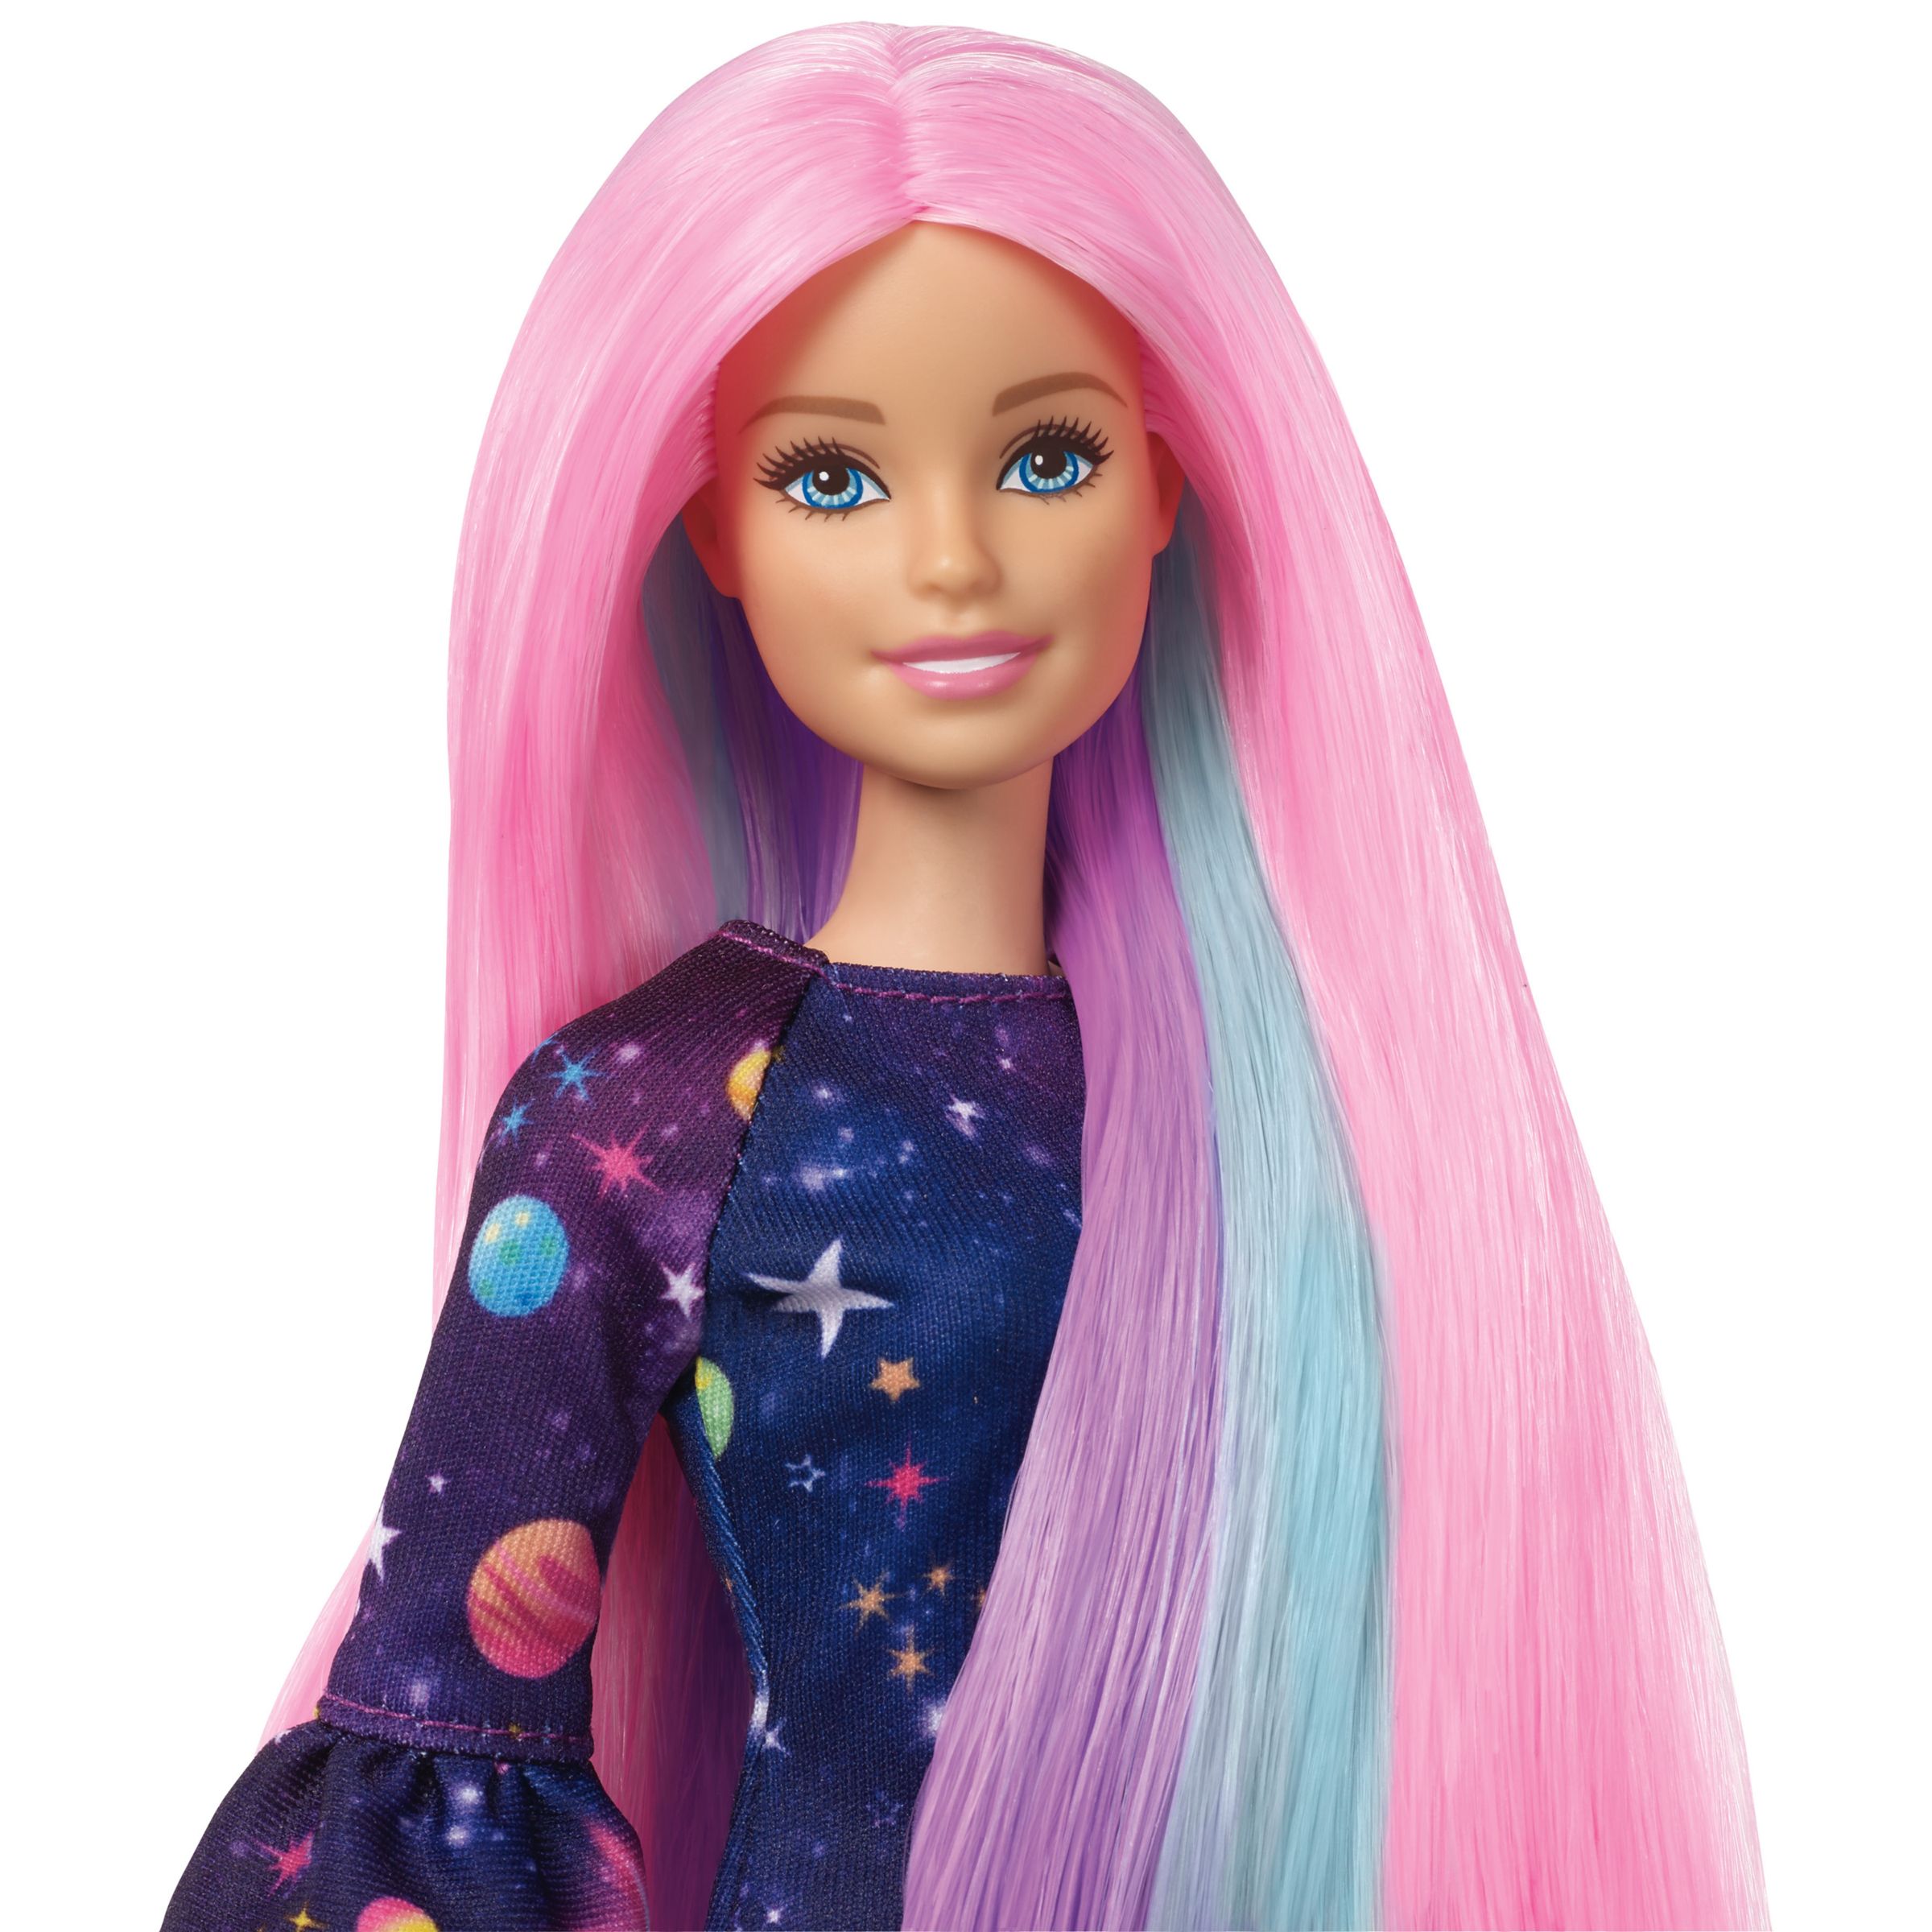 Барби с розовыми волосами. Кукла Barbie цветной сюрприз с розовыми волосами, fhx00. Кукла Барби цветной сюрприз с розовыми волосами. Кукла Mattel Barbie с разноцветными волосами, grn81.